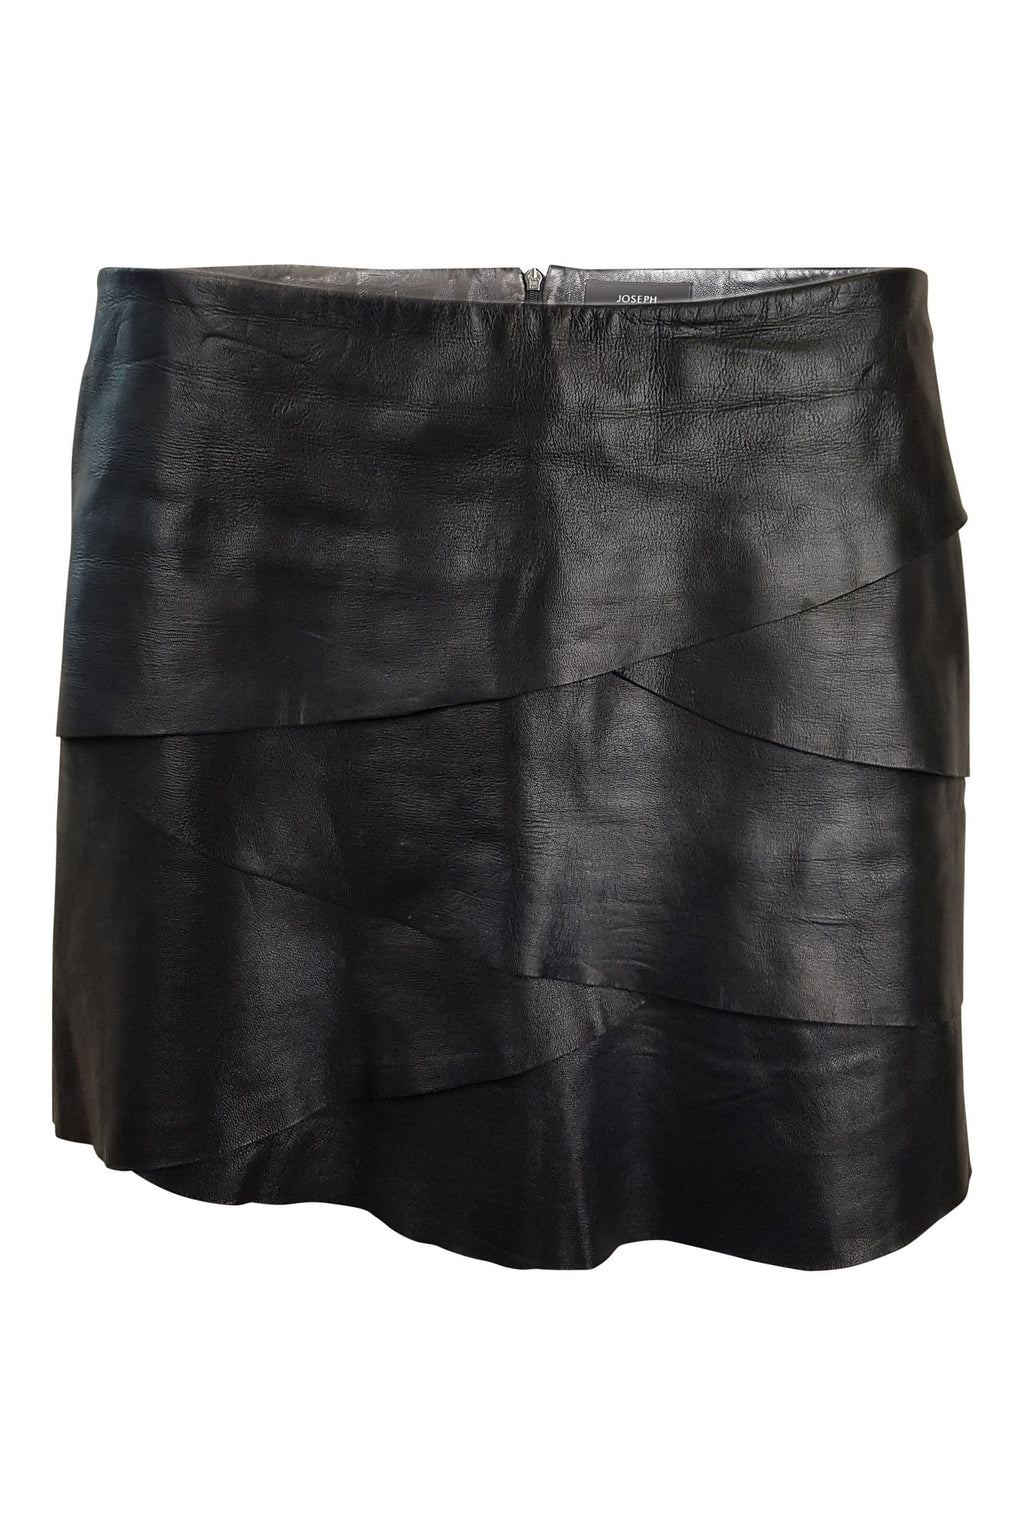 JOSEPH Black Leather Layered Micro Mini Skirt (UK 8)-Joseph-The Freperie